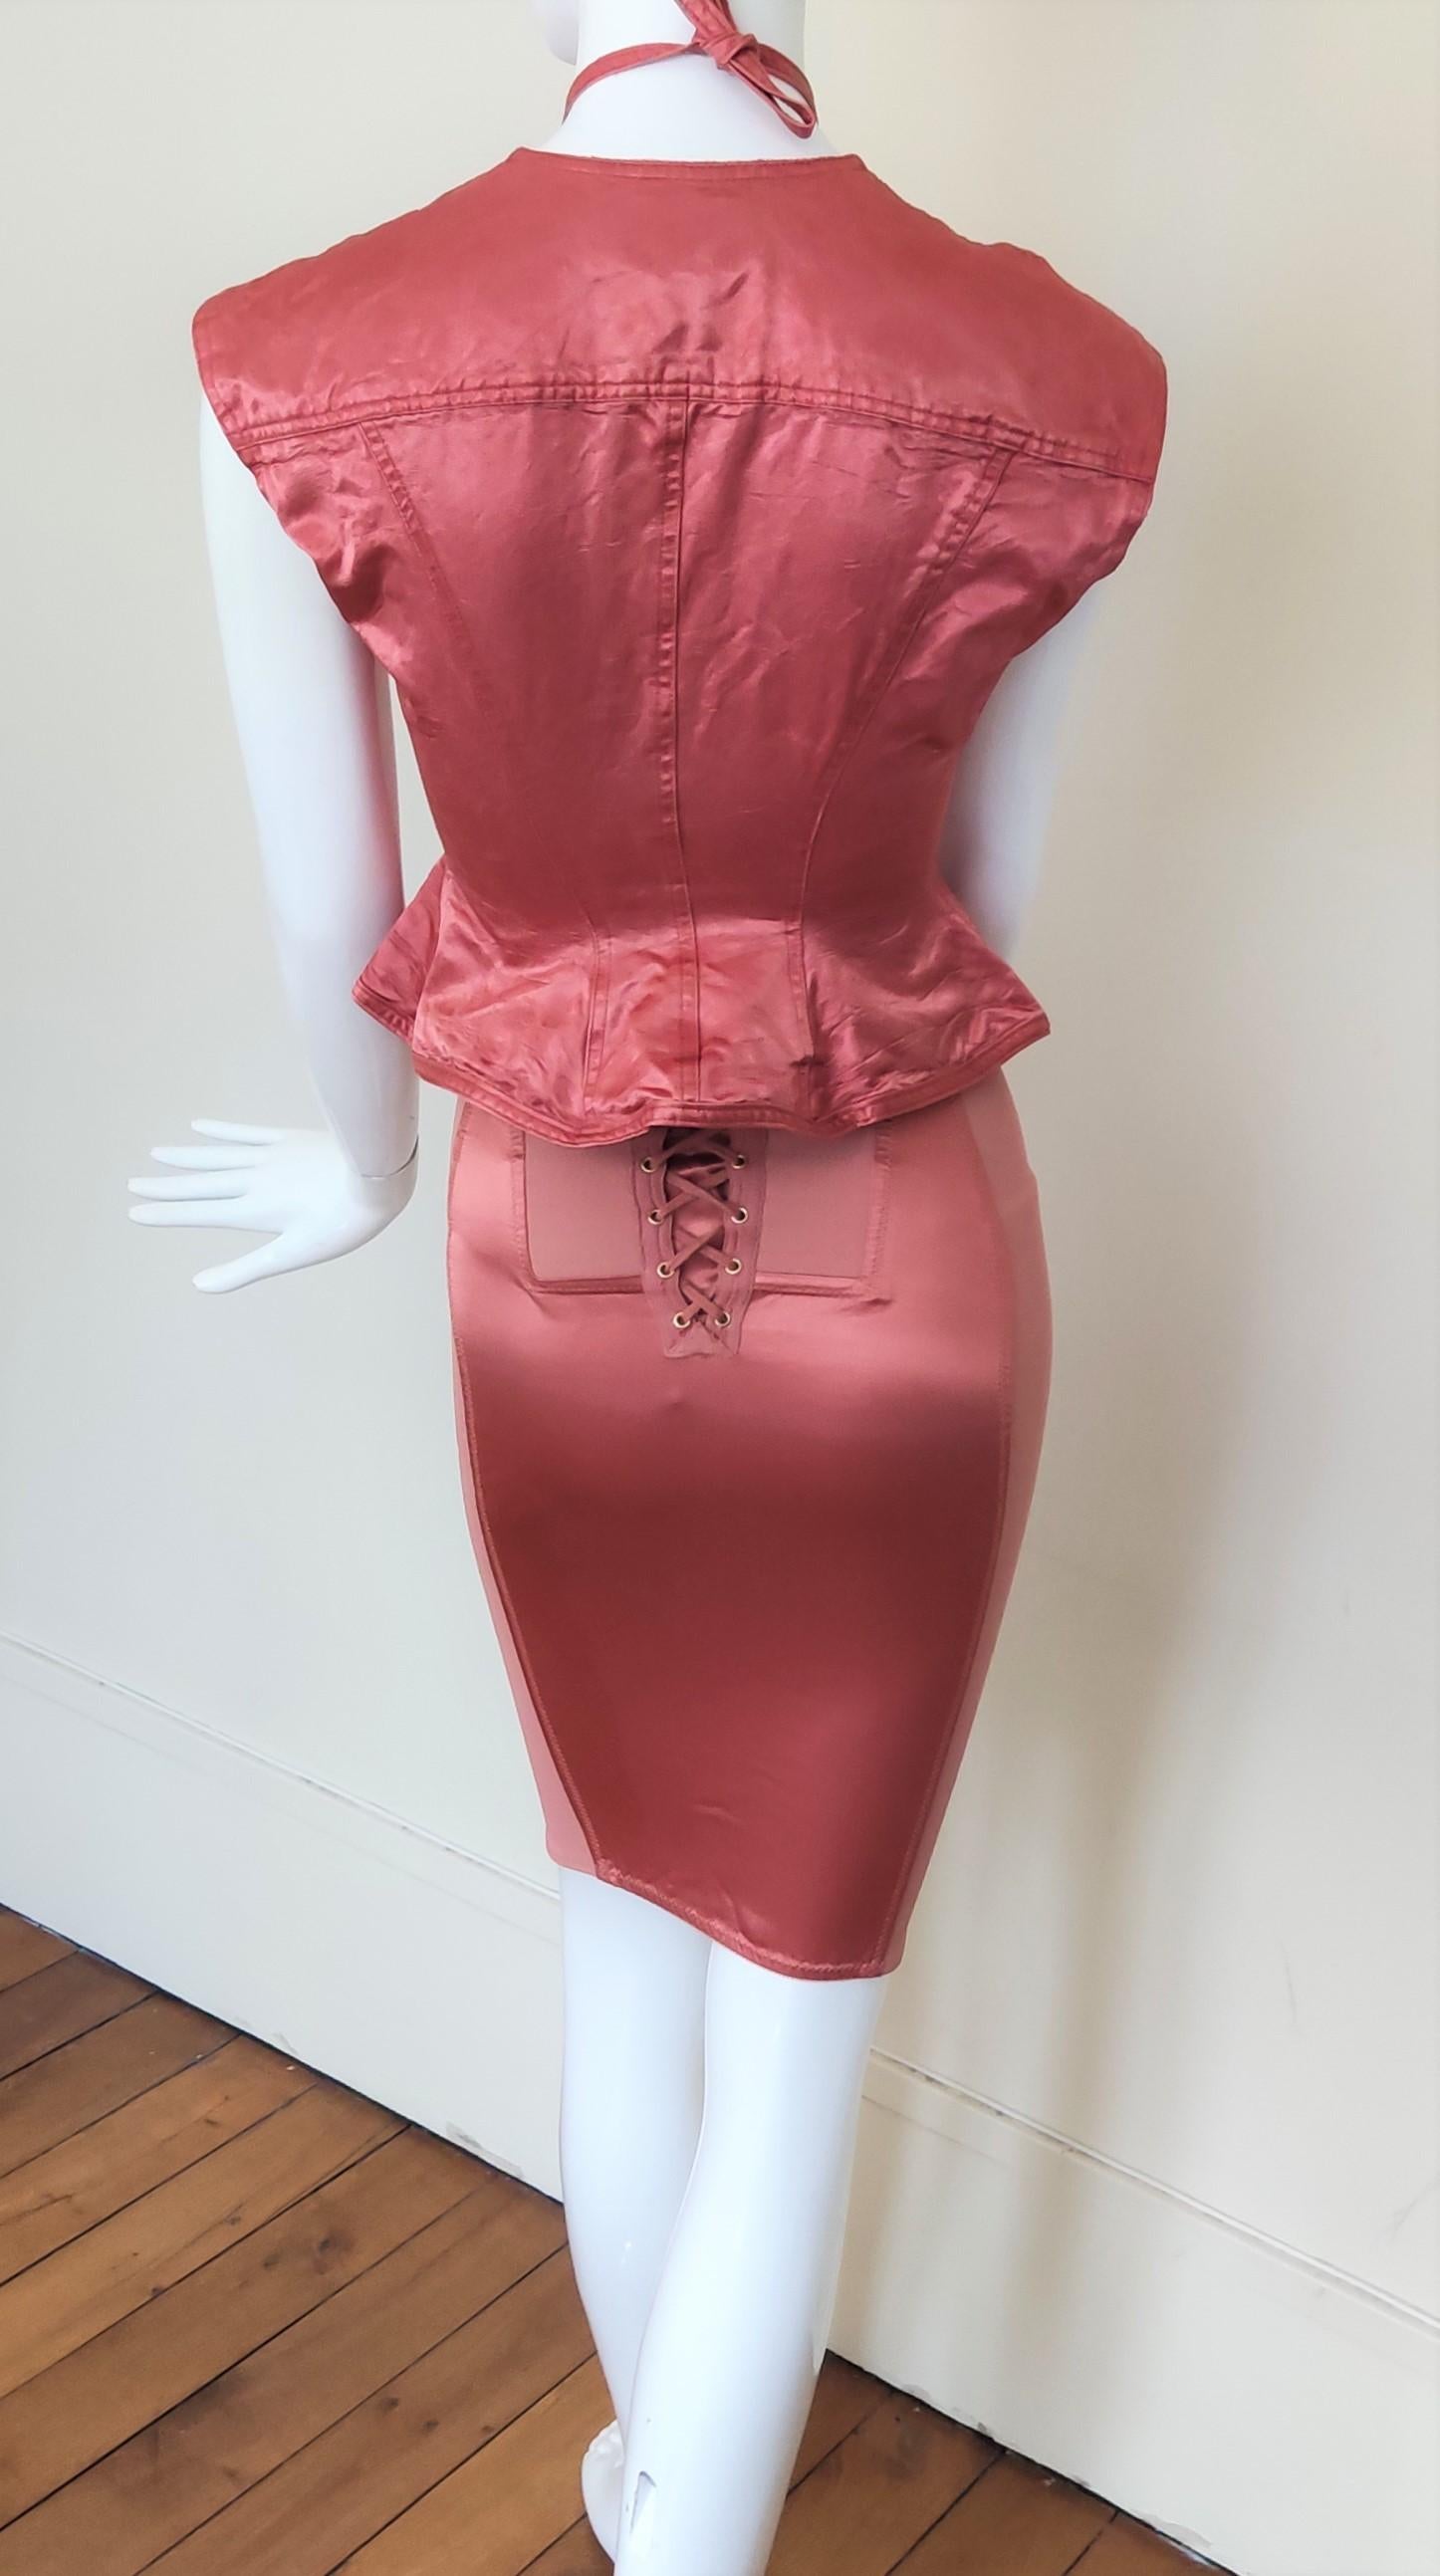 Jean Paul Gaultier Corset Bustier Pink Rose Vintage Lace Bondage Dress For Sale 9